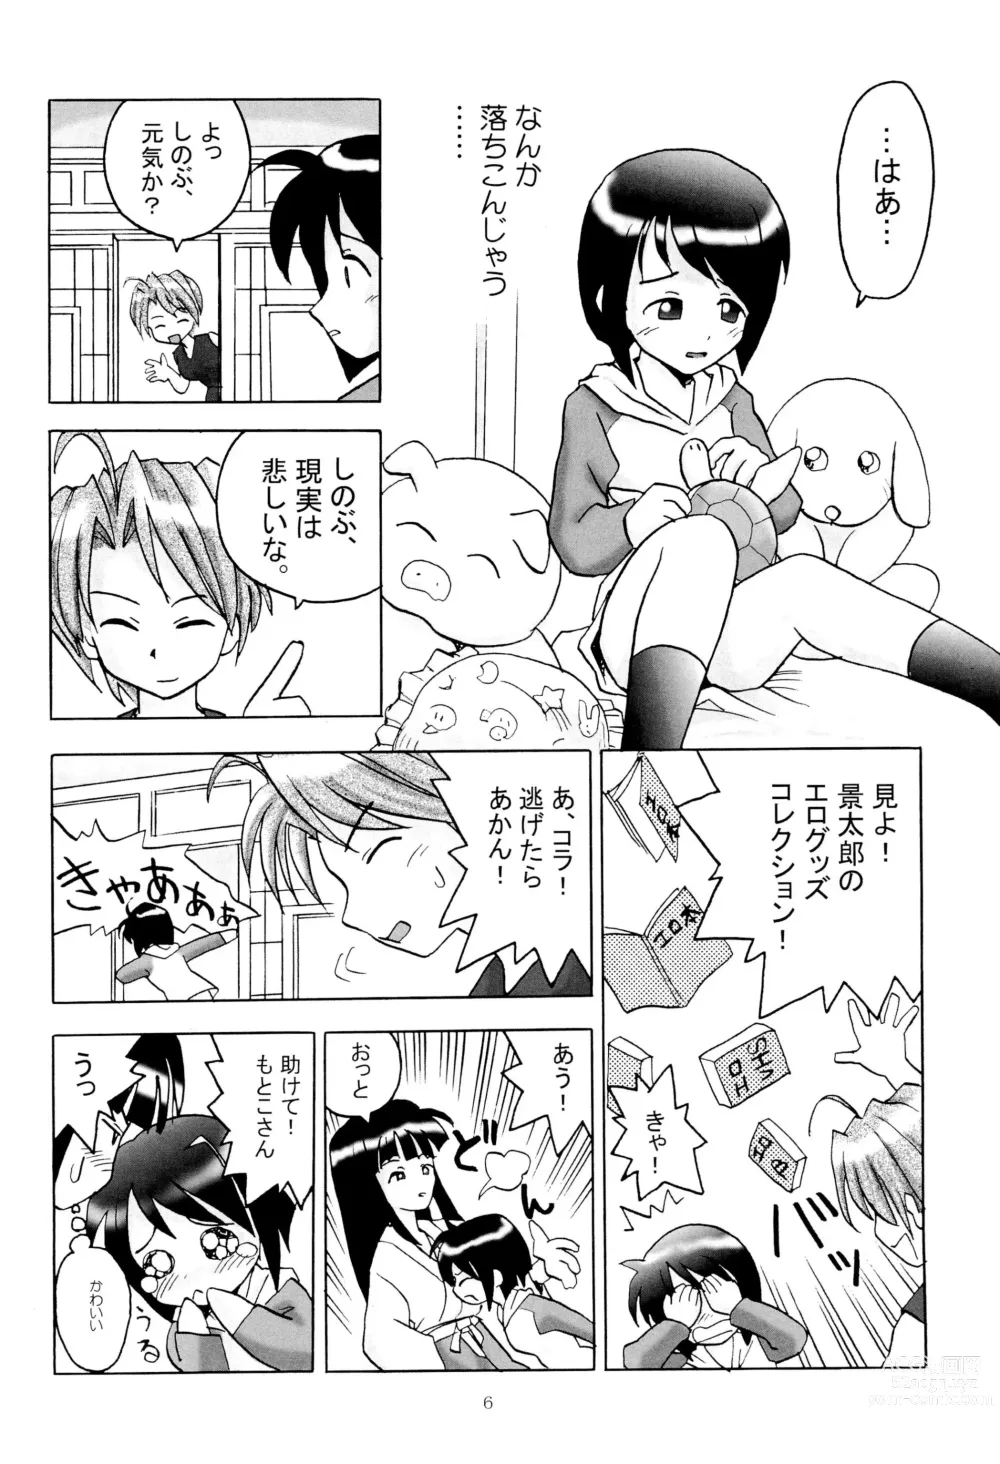 Page 8 of doujinshi Shino Buna